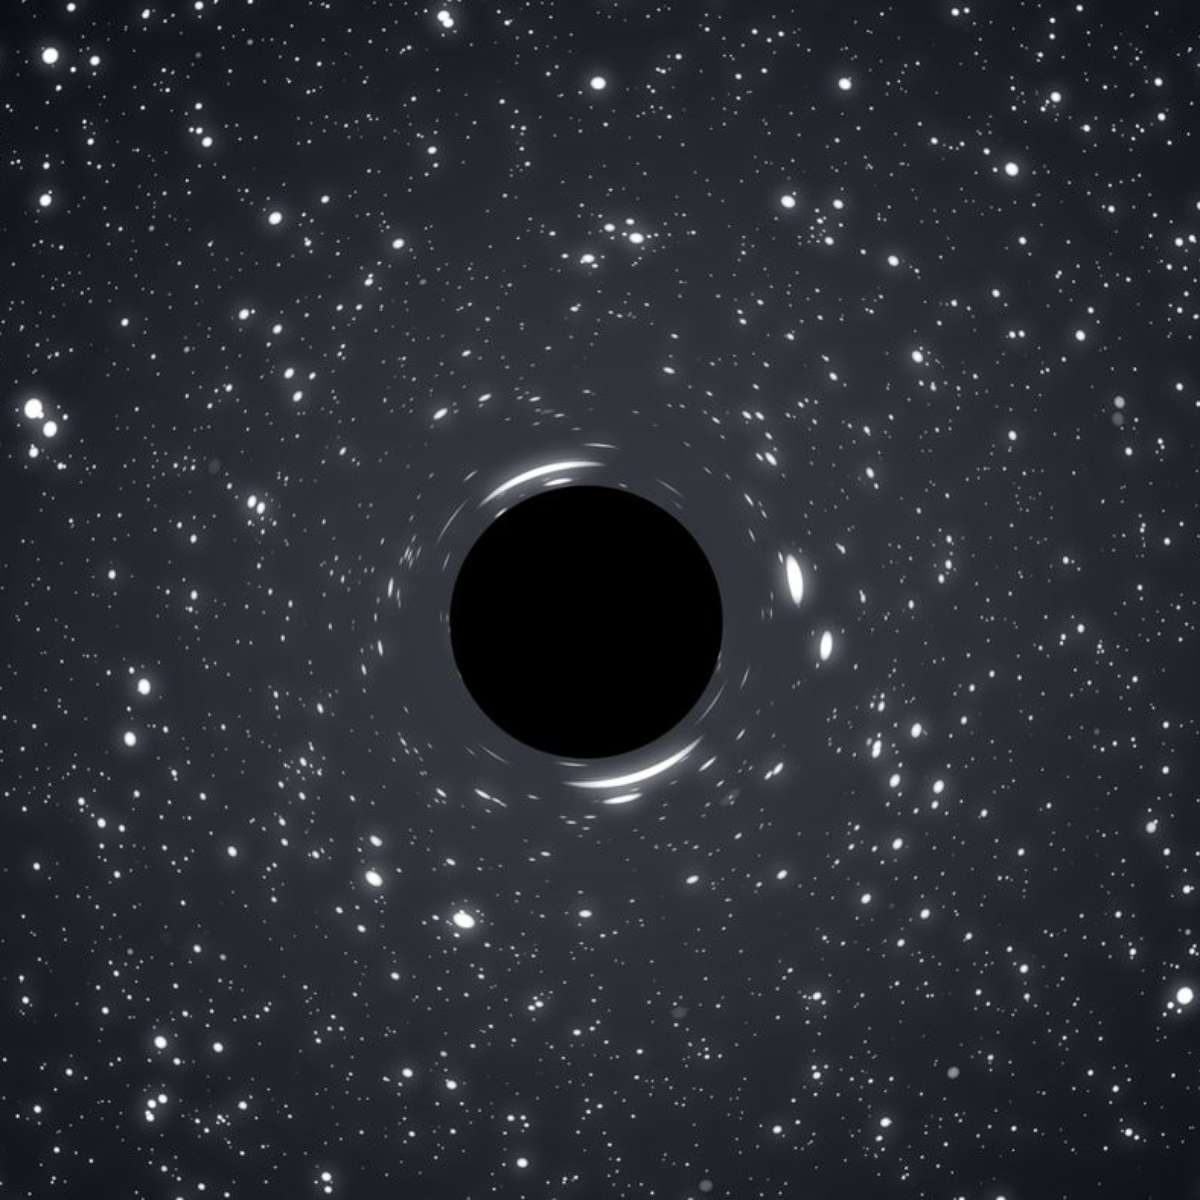 Buraco negro supermassivo foge de galáxia e forma novas estrelas